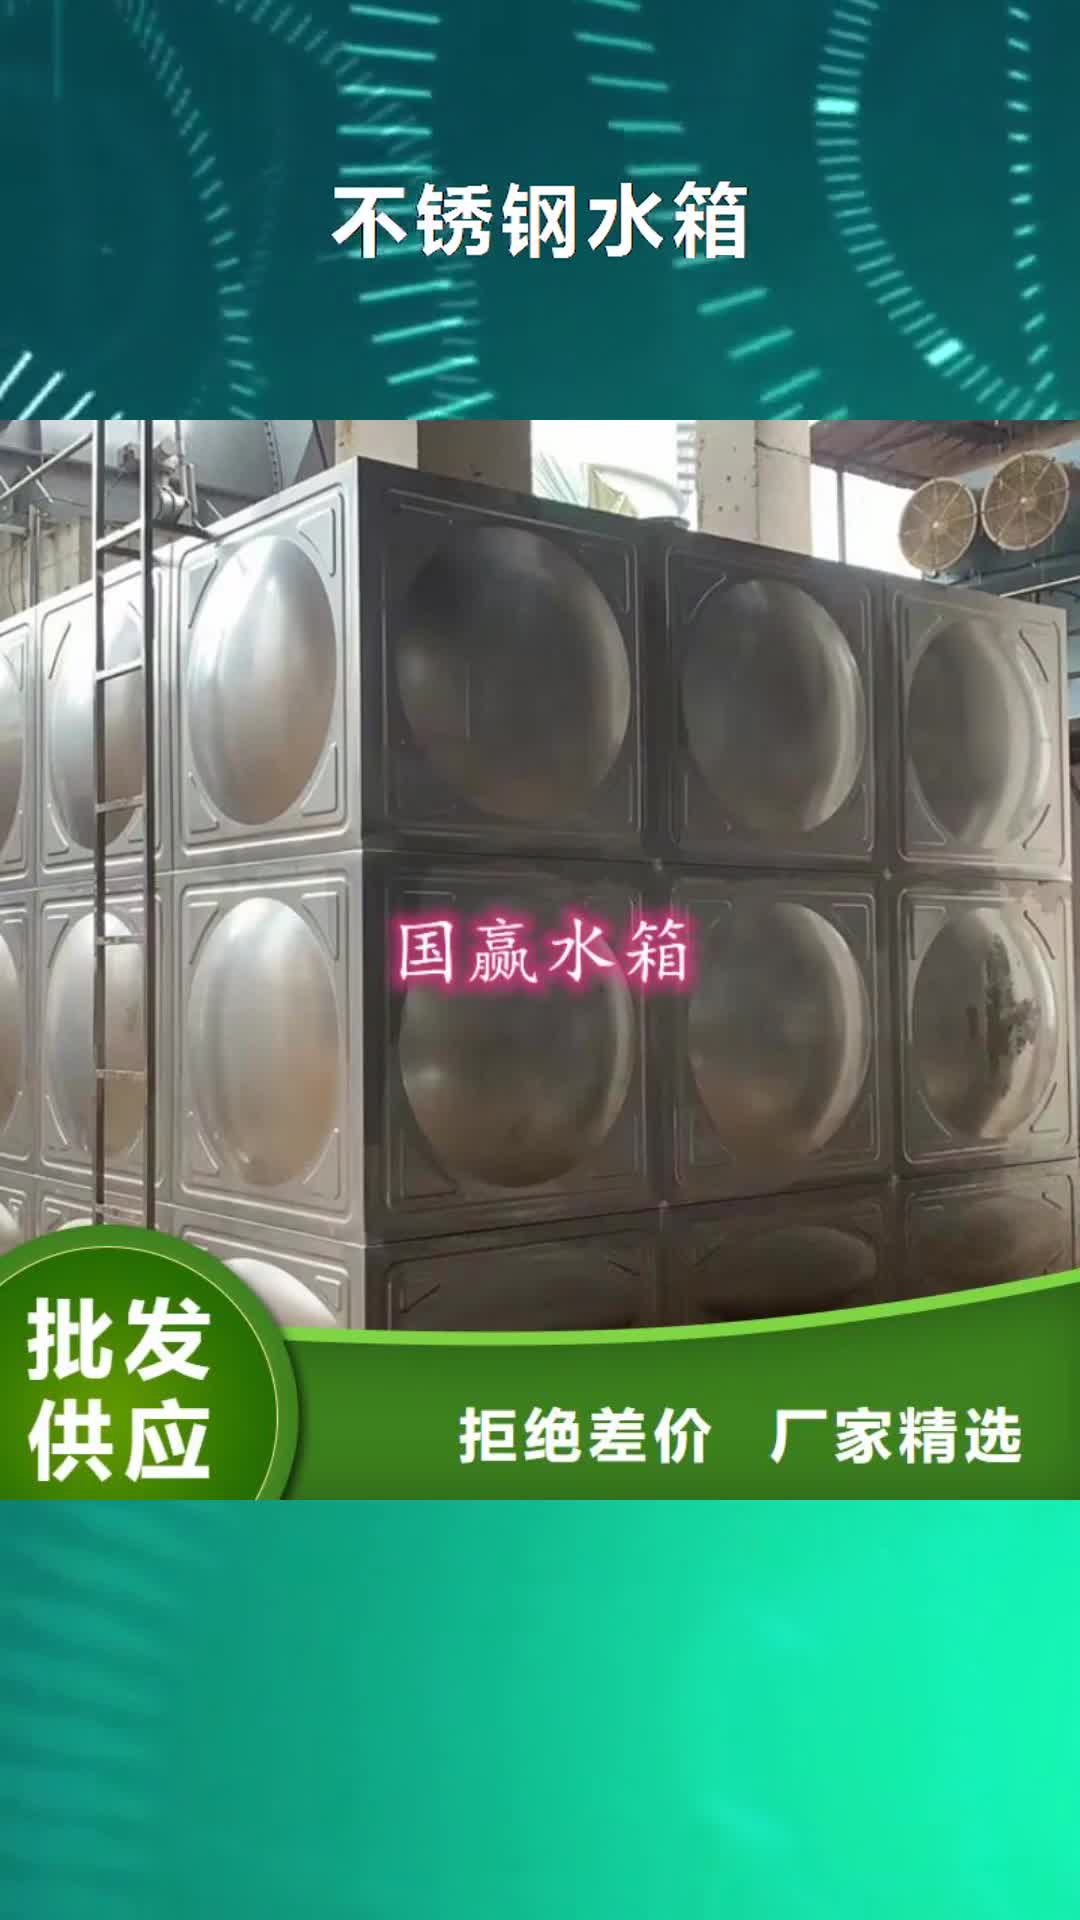 宜昌【不锈钢水箱】,不锈钢保温水箱正品保障